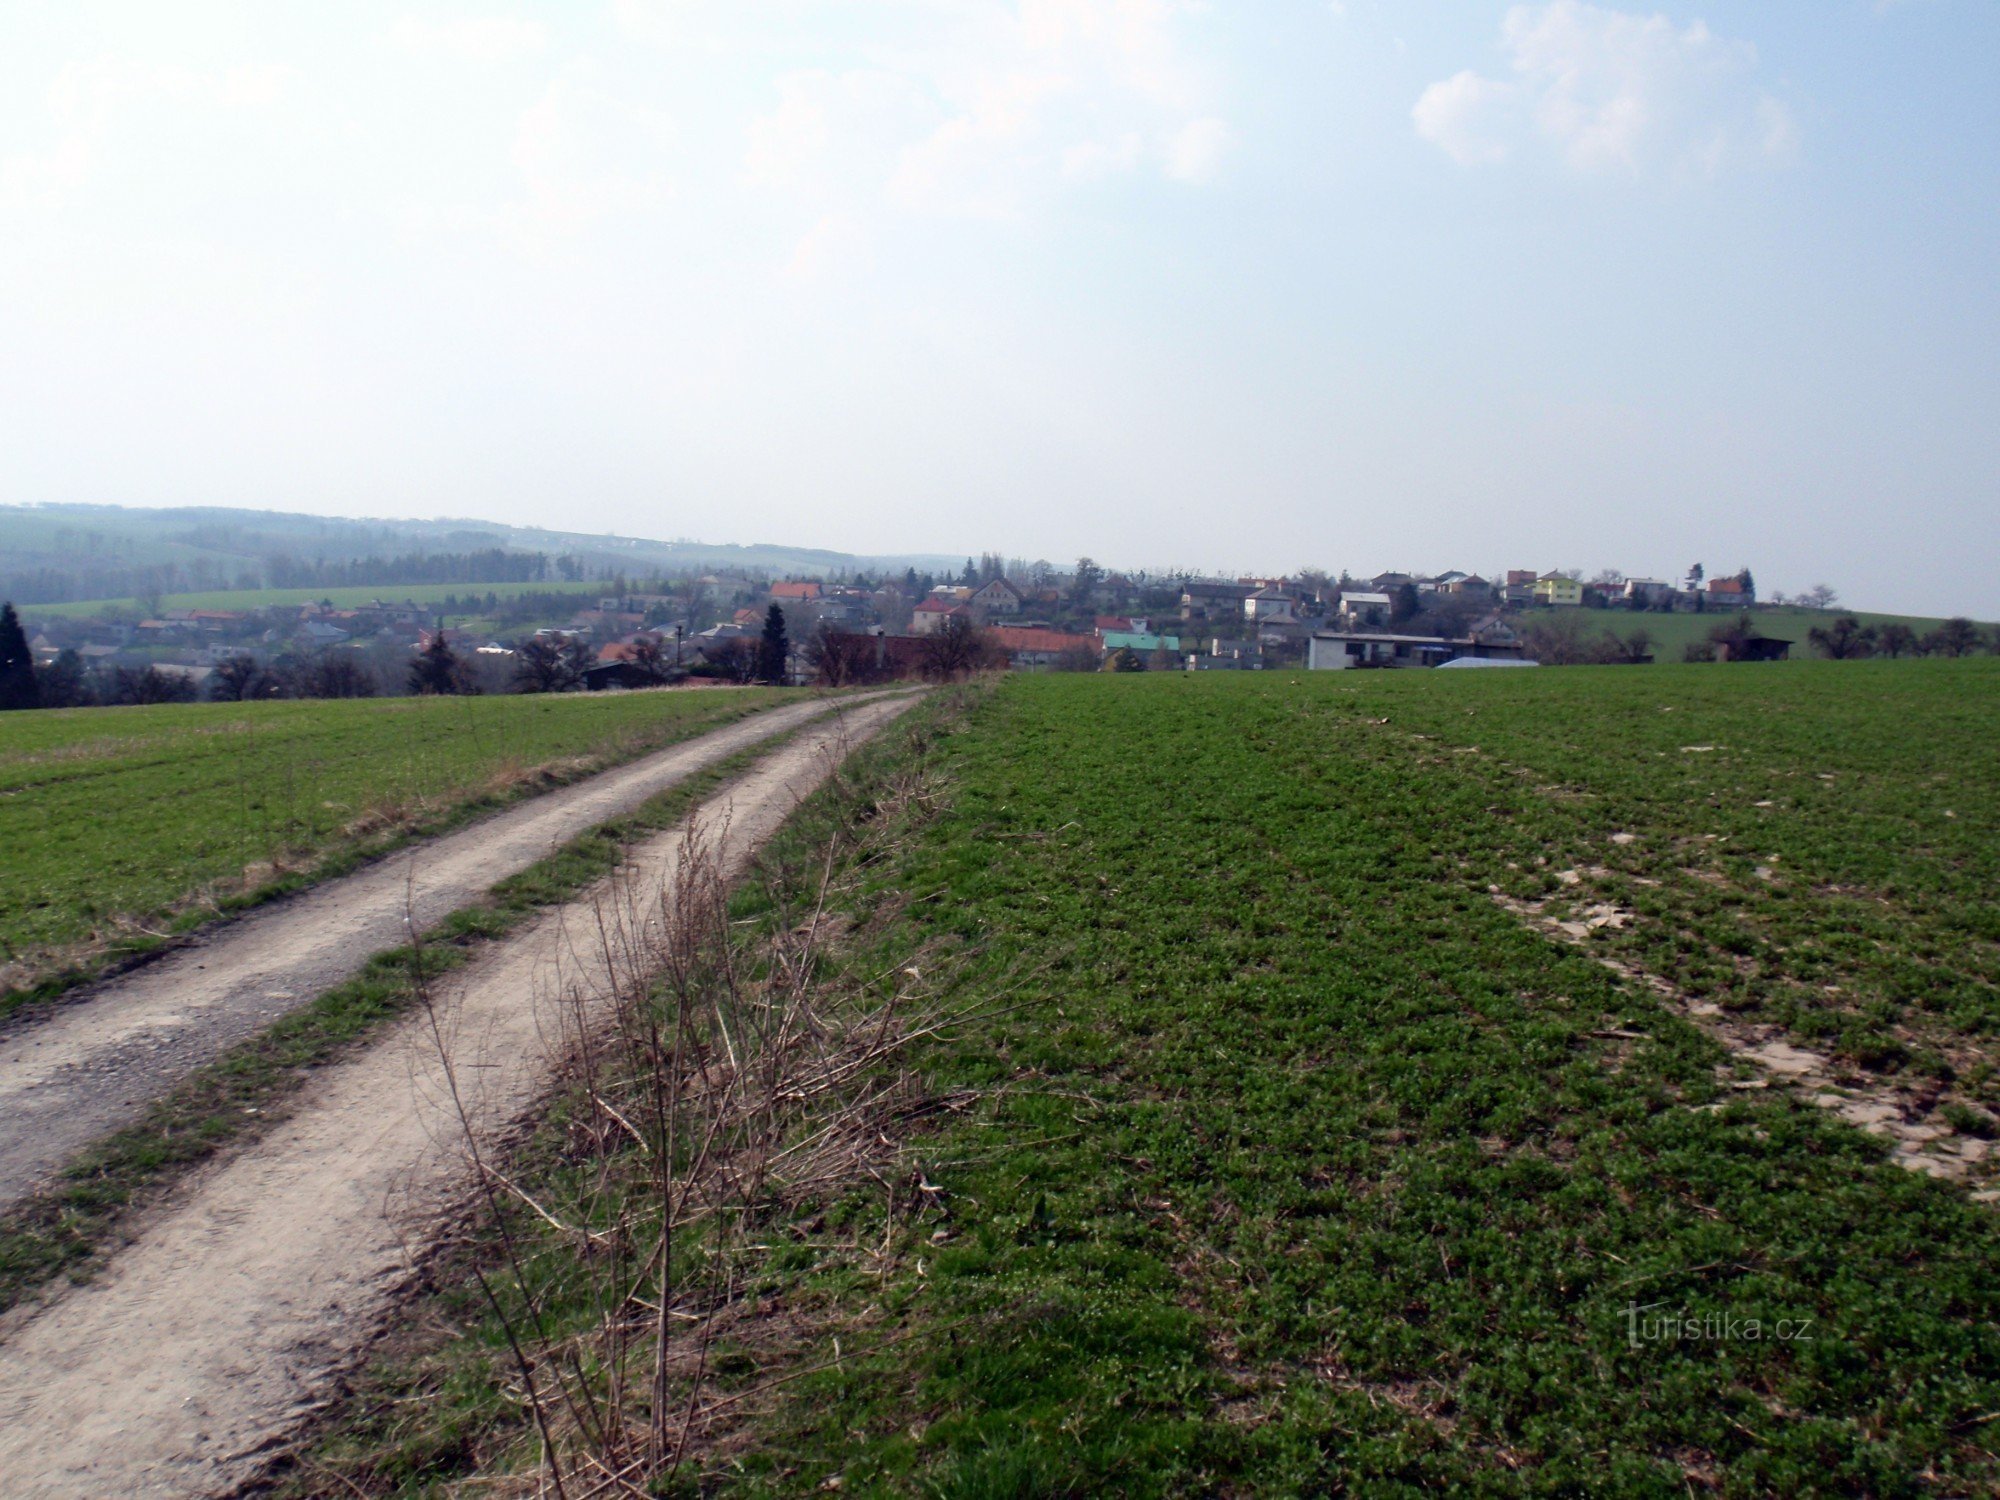 自転車道 6191 から見たズビスラビツェの村